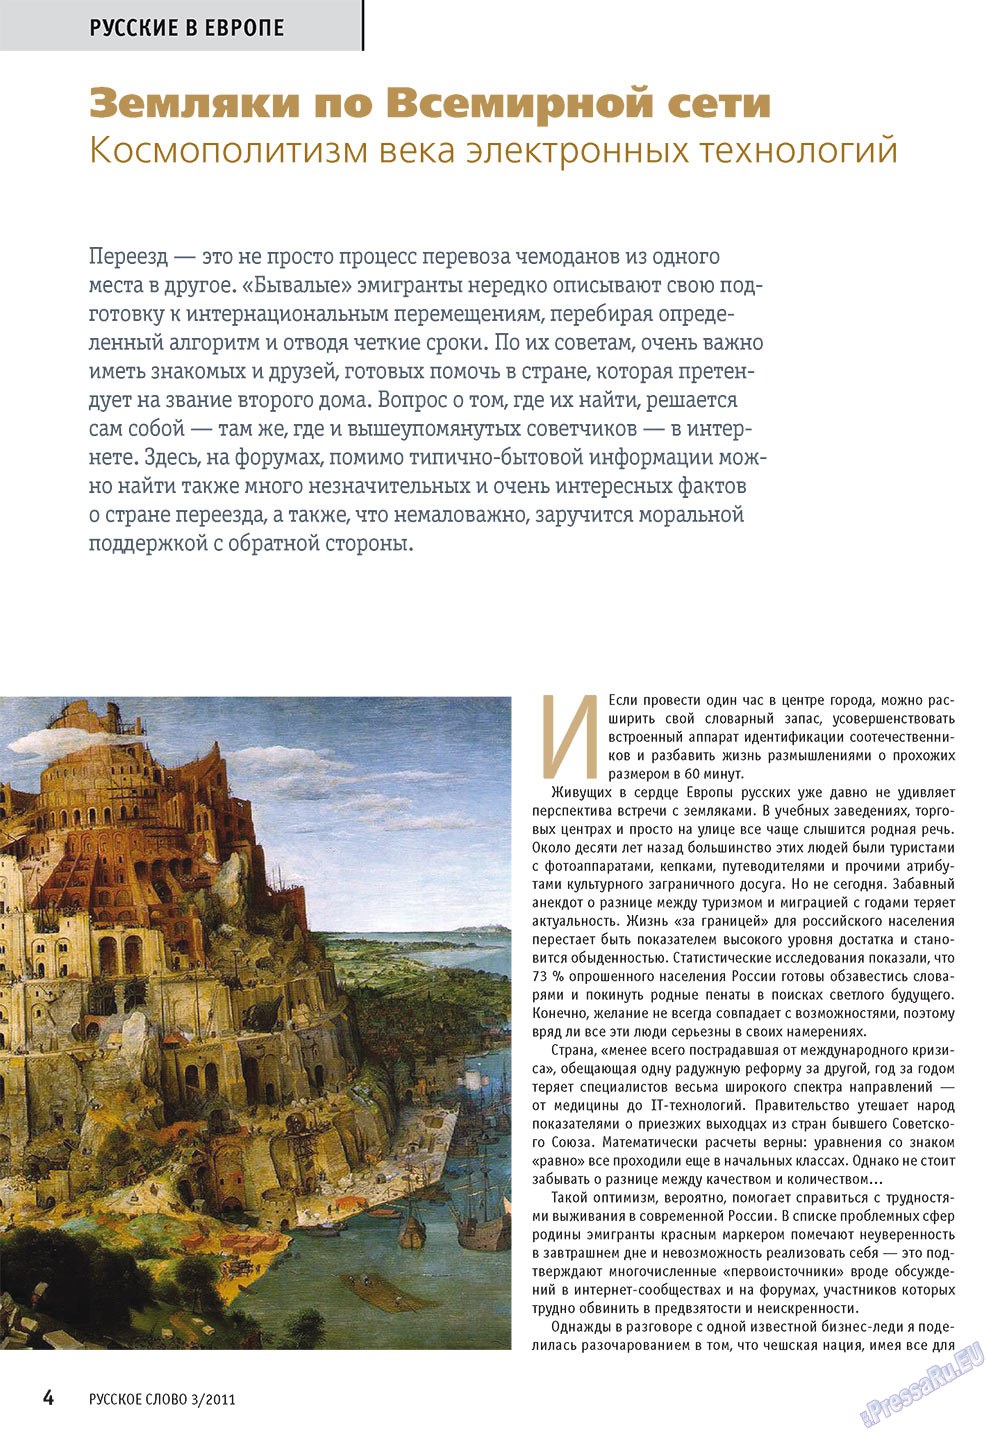 Русское слово, журнал. 2011 №3 стр.6